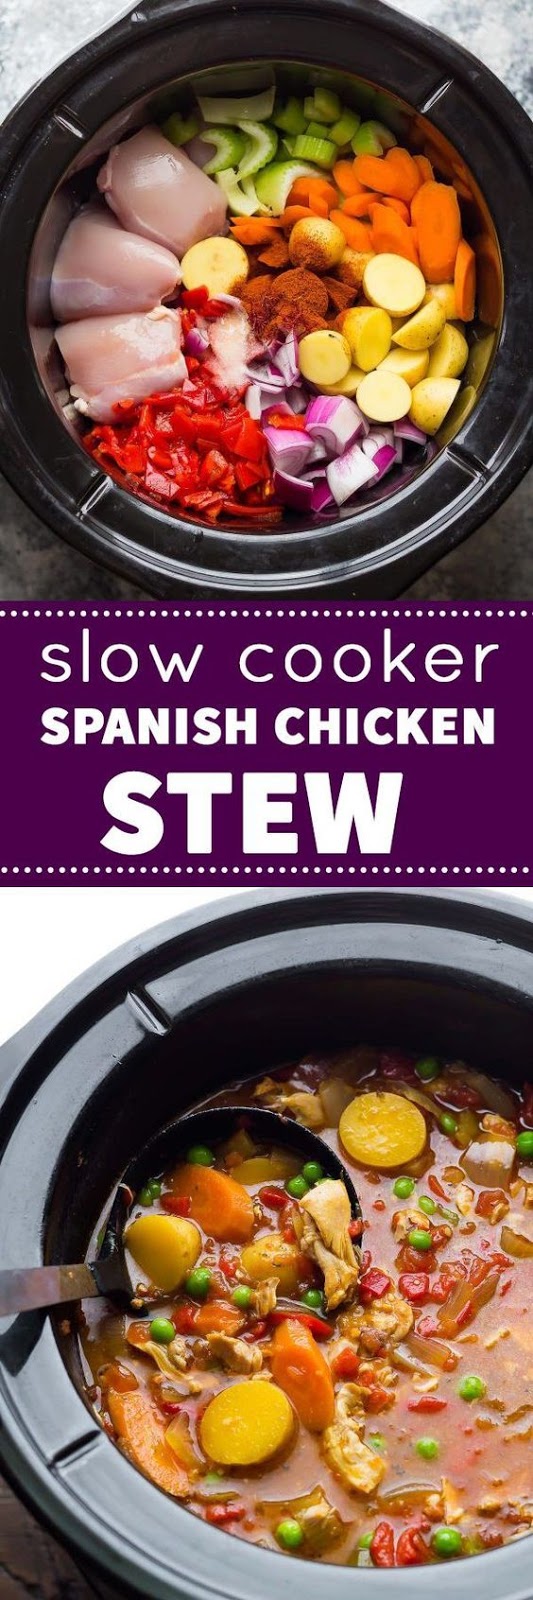 Slow Cooker Spanish Chicken Stew Recipe